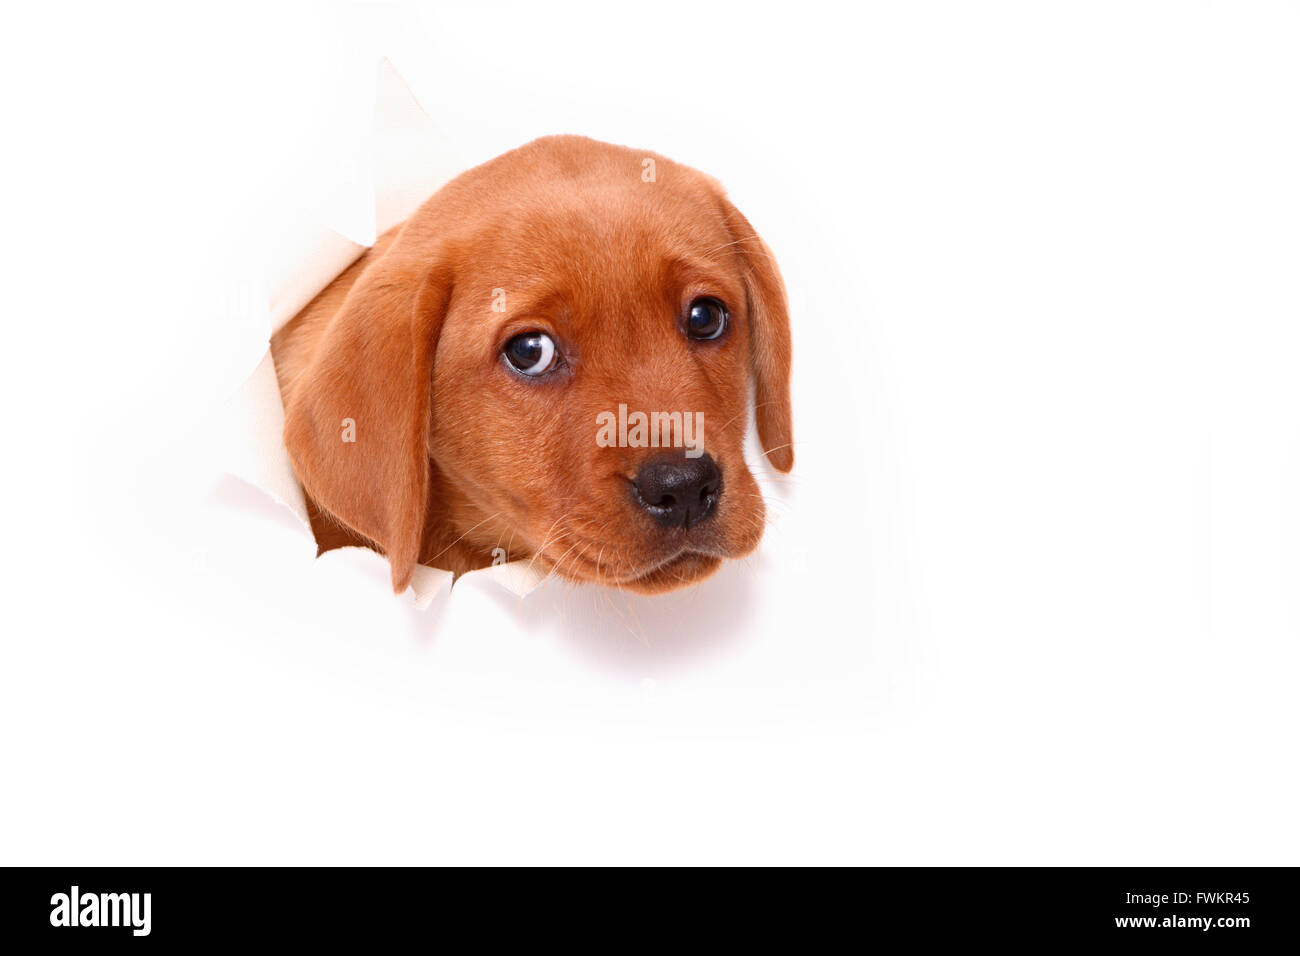 Labrador Retriever chiot (8 semaines) à l'intermédiaire d'un livre blanc mur. Studio photo sur un fond blanc. Allemagne Banque D'Images